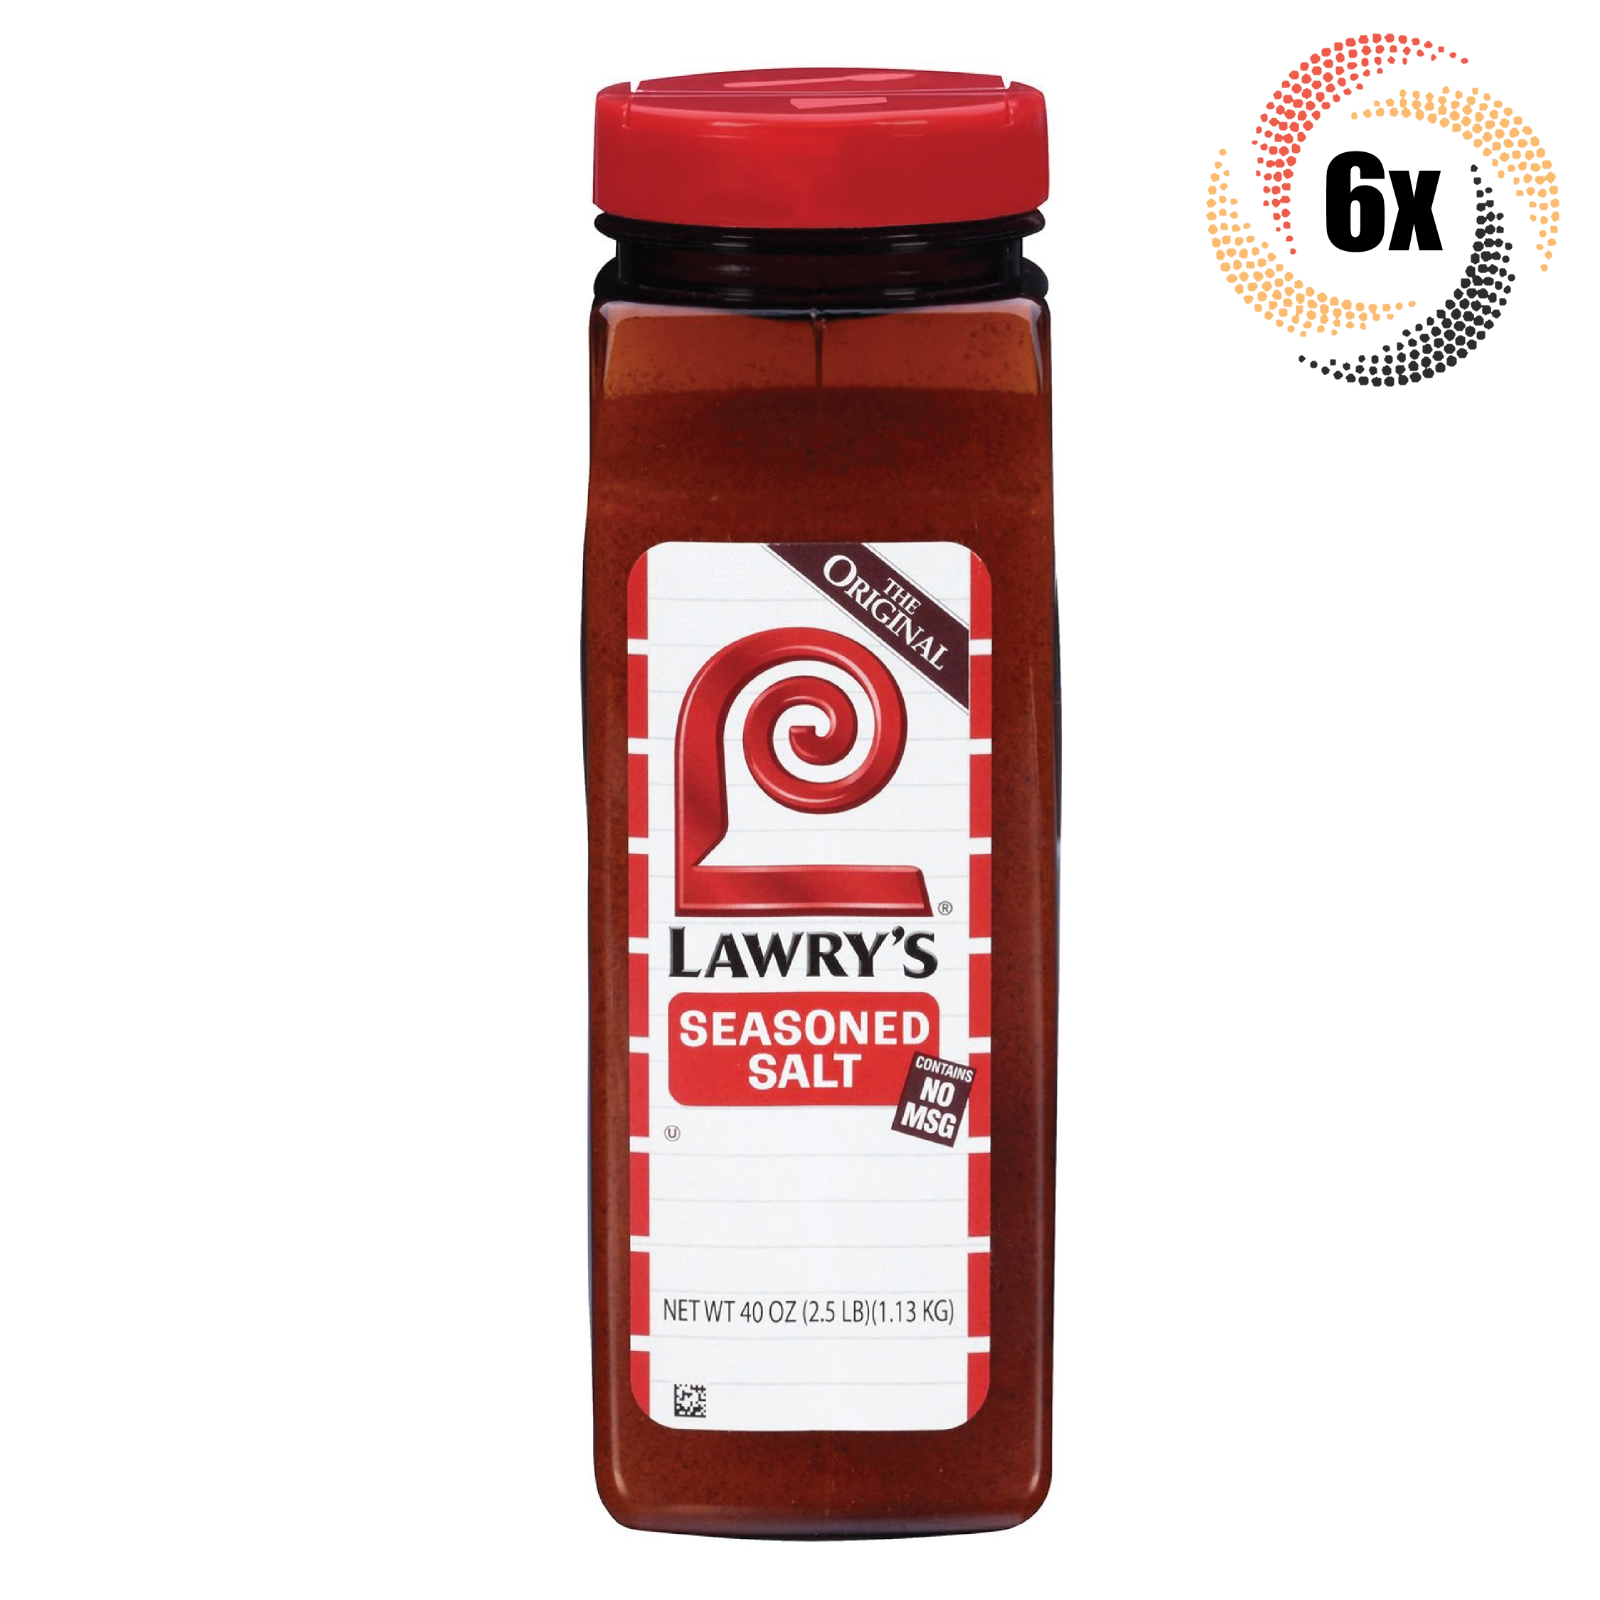 6x Shakers Lawry's Original Seasoned Salt | No MSG | 2.5lbs | Fast Shipping - $53.79